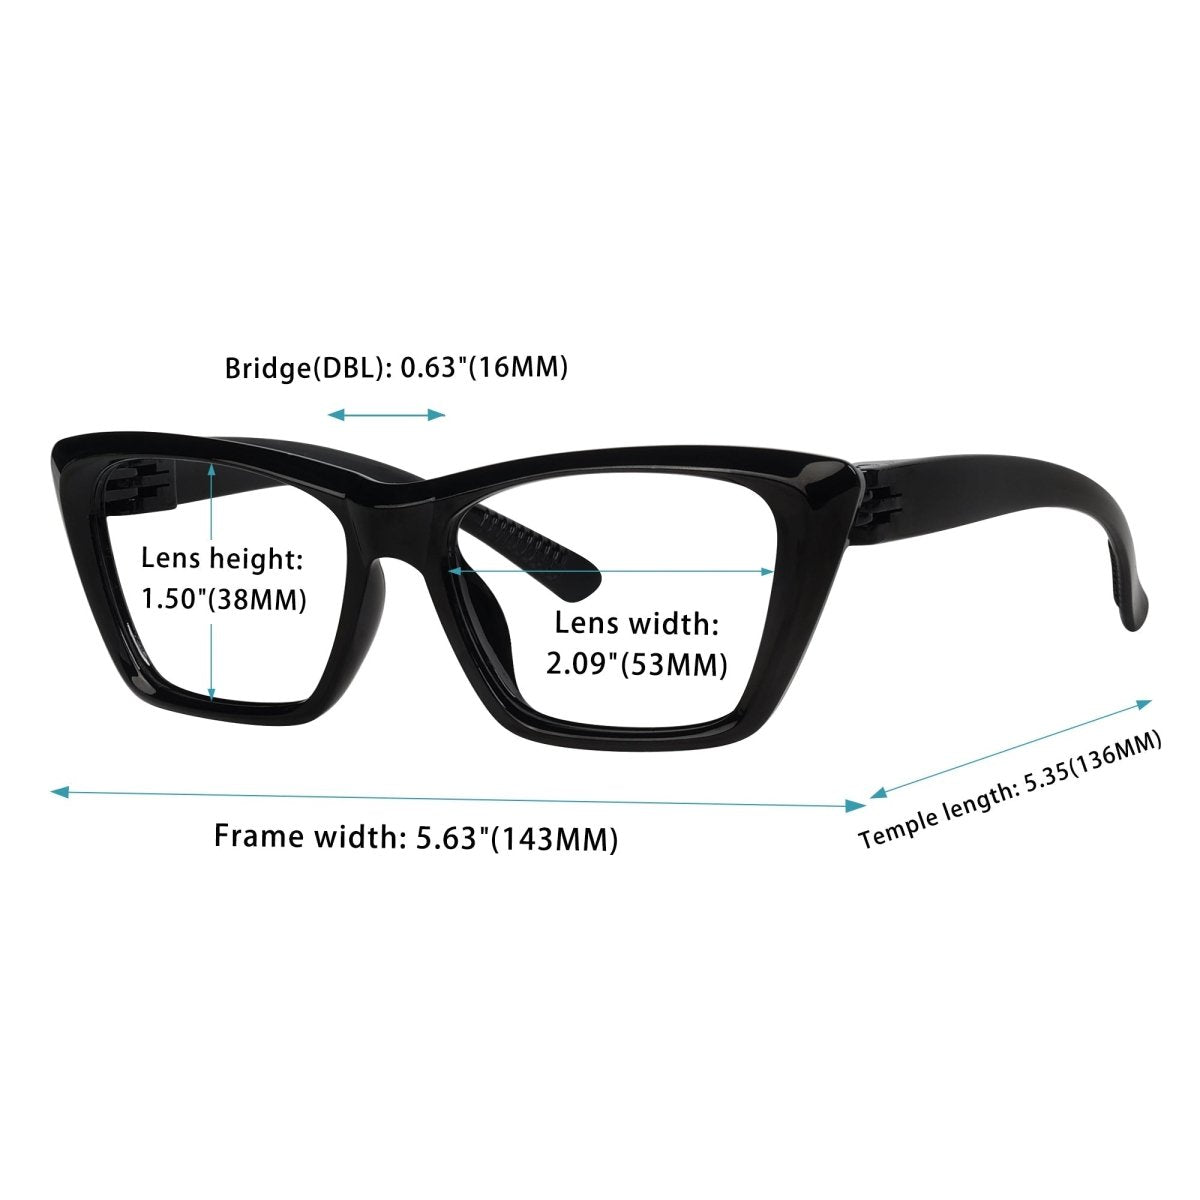 6 Pack Cat - eye Reading Glasses Screwless Metalless Readers R2514eyekeeper.com